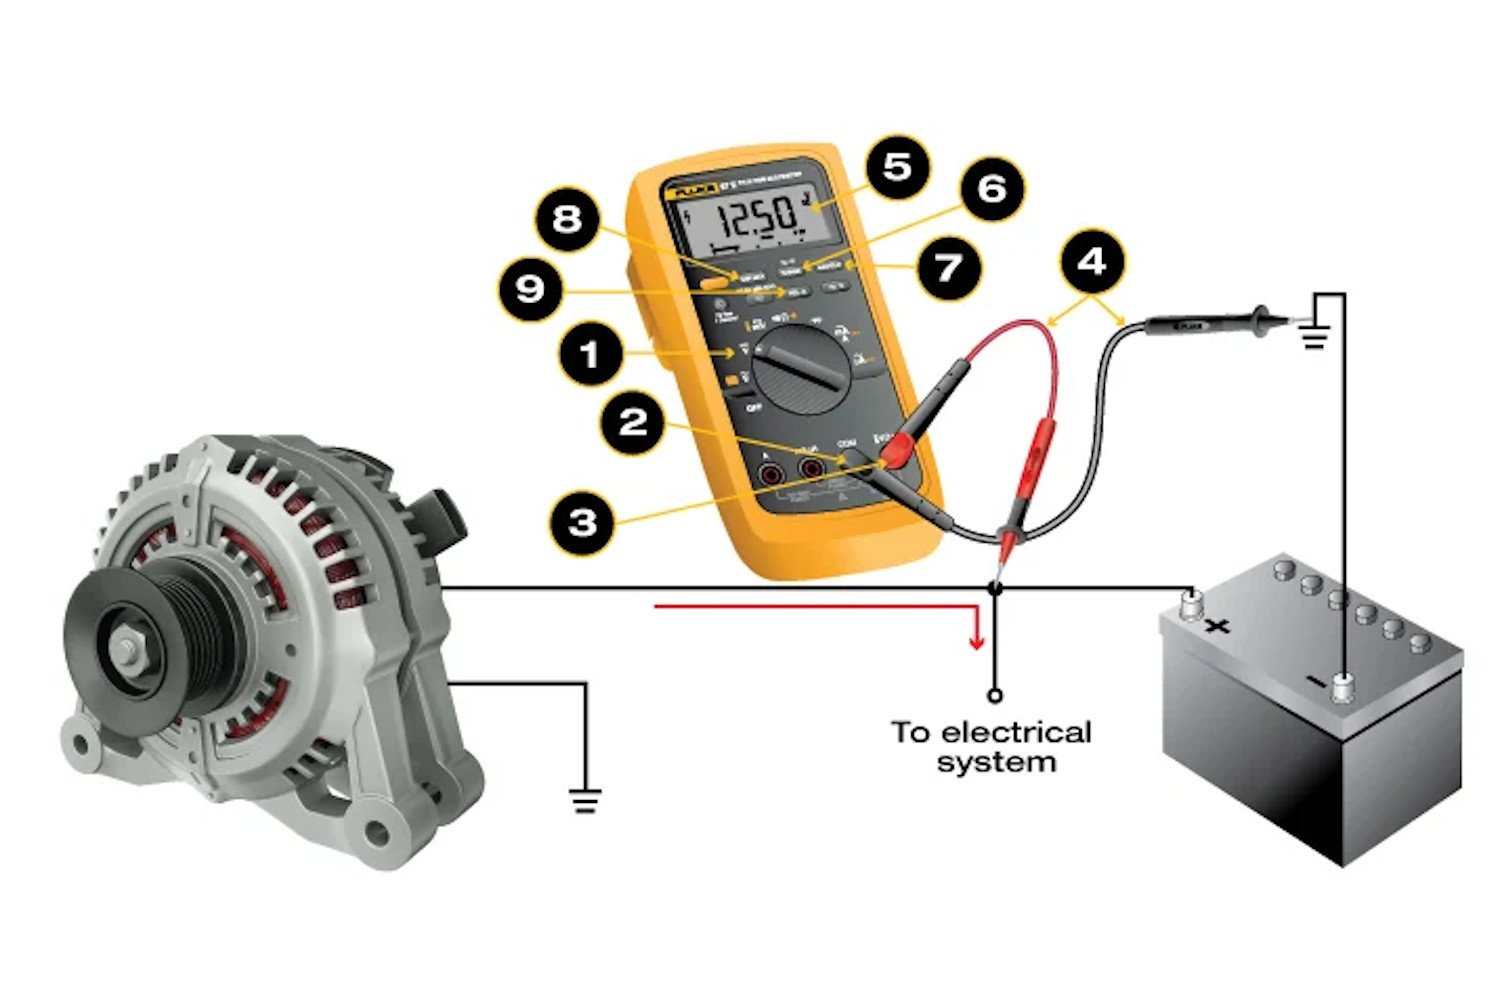 デジタル・マルチメーターでDC電圧を測定する手順